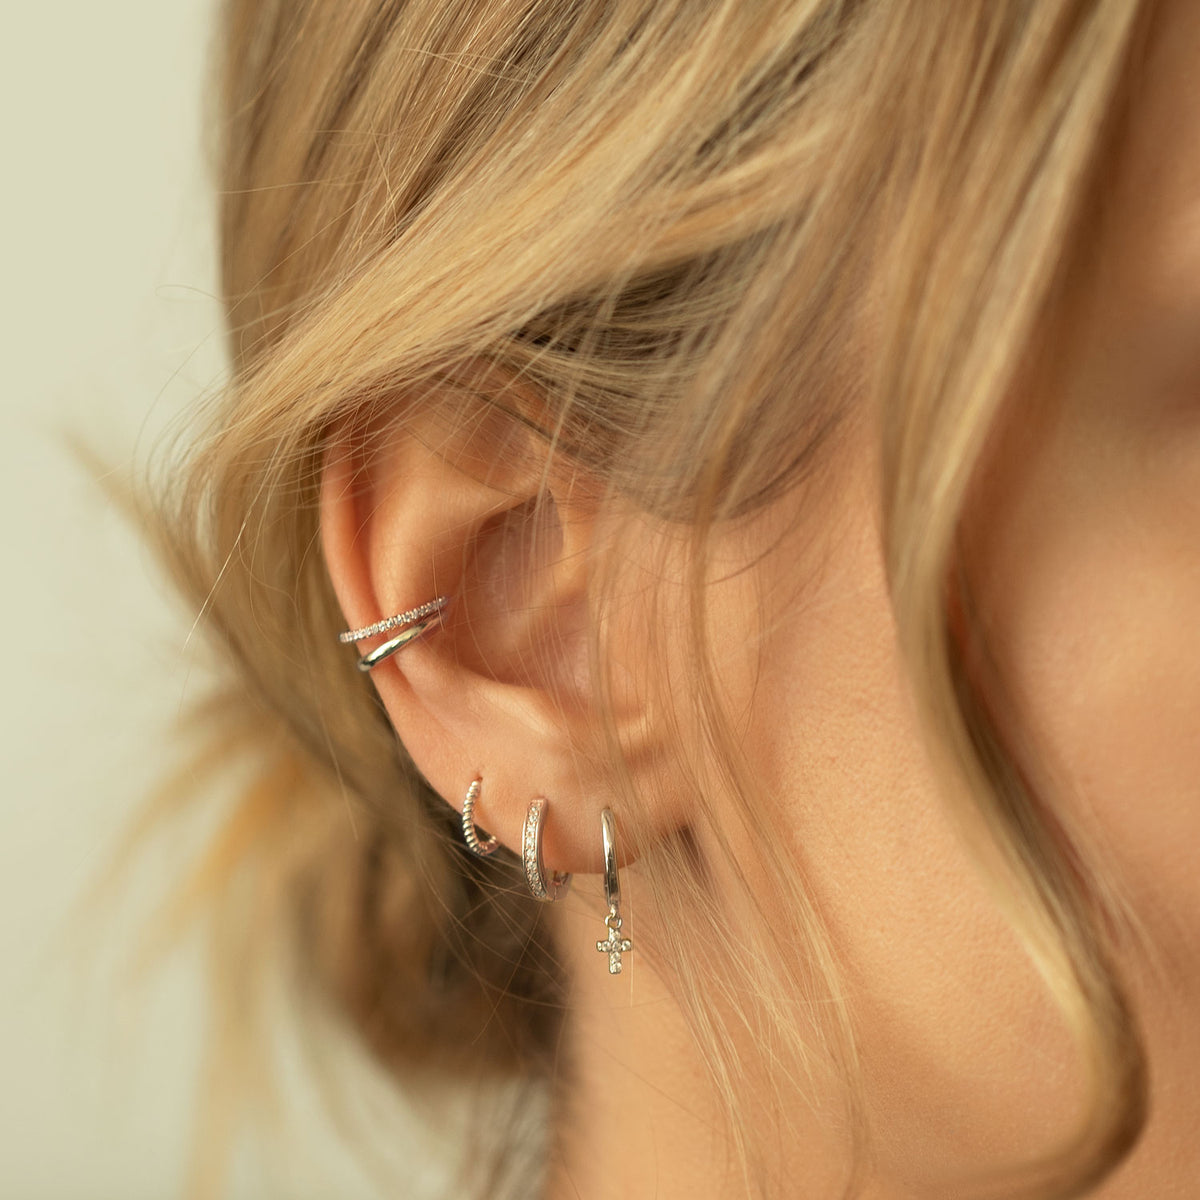 Simple Hinge Small Hoop Earrings in Gold | 20mm | Jewellery by Astrid & Miyu